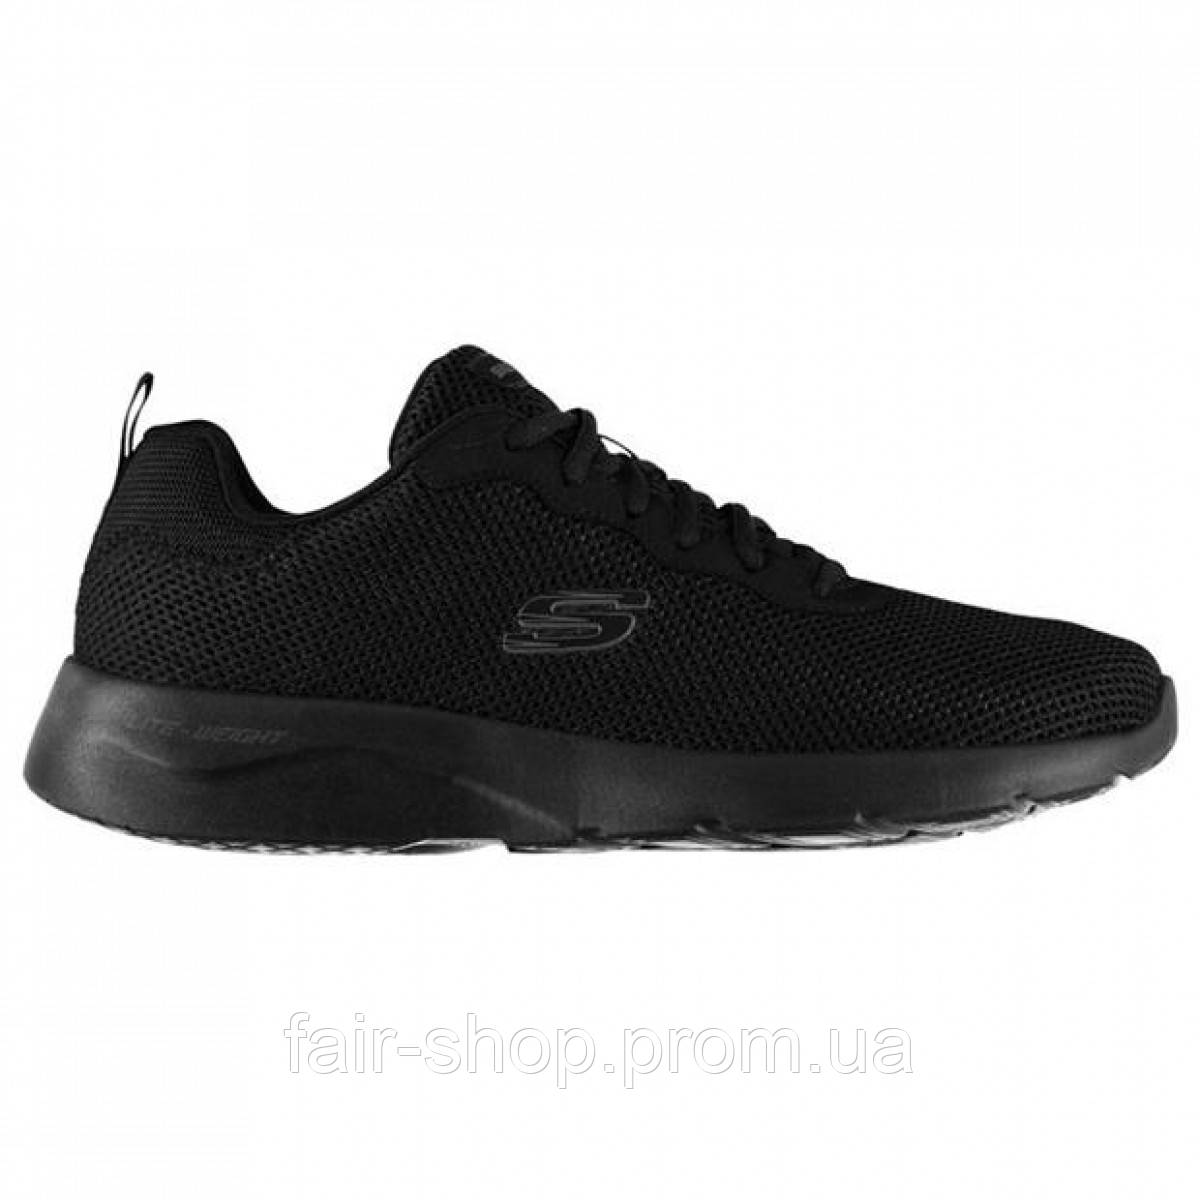 Кросівки Skechers Dynamight 2 R 00 Black, оригінал. Доставка від 14 днів